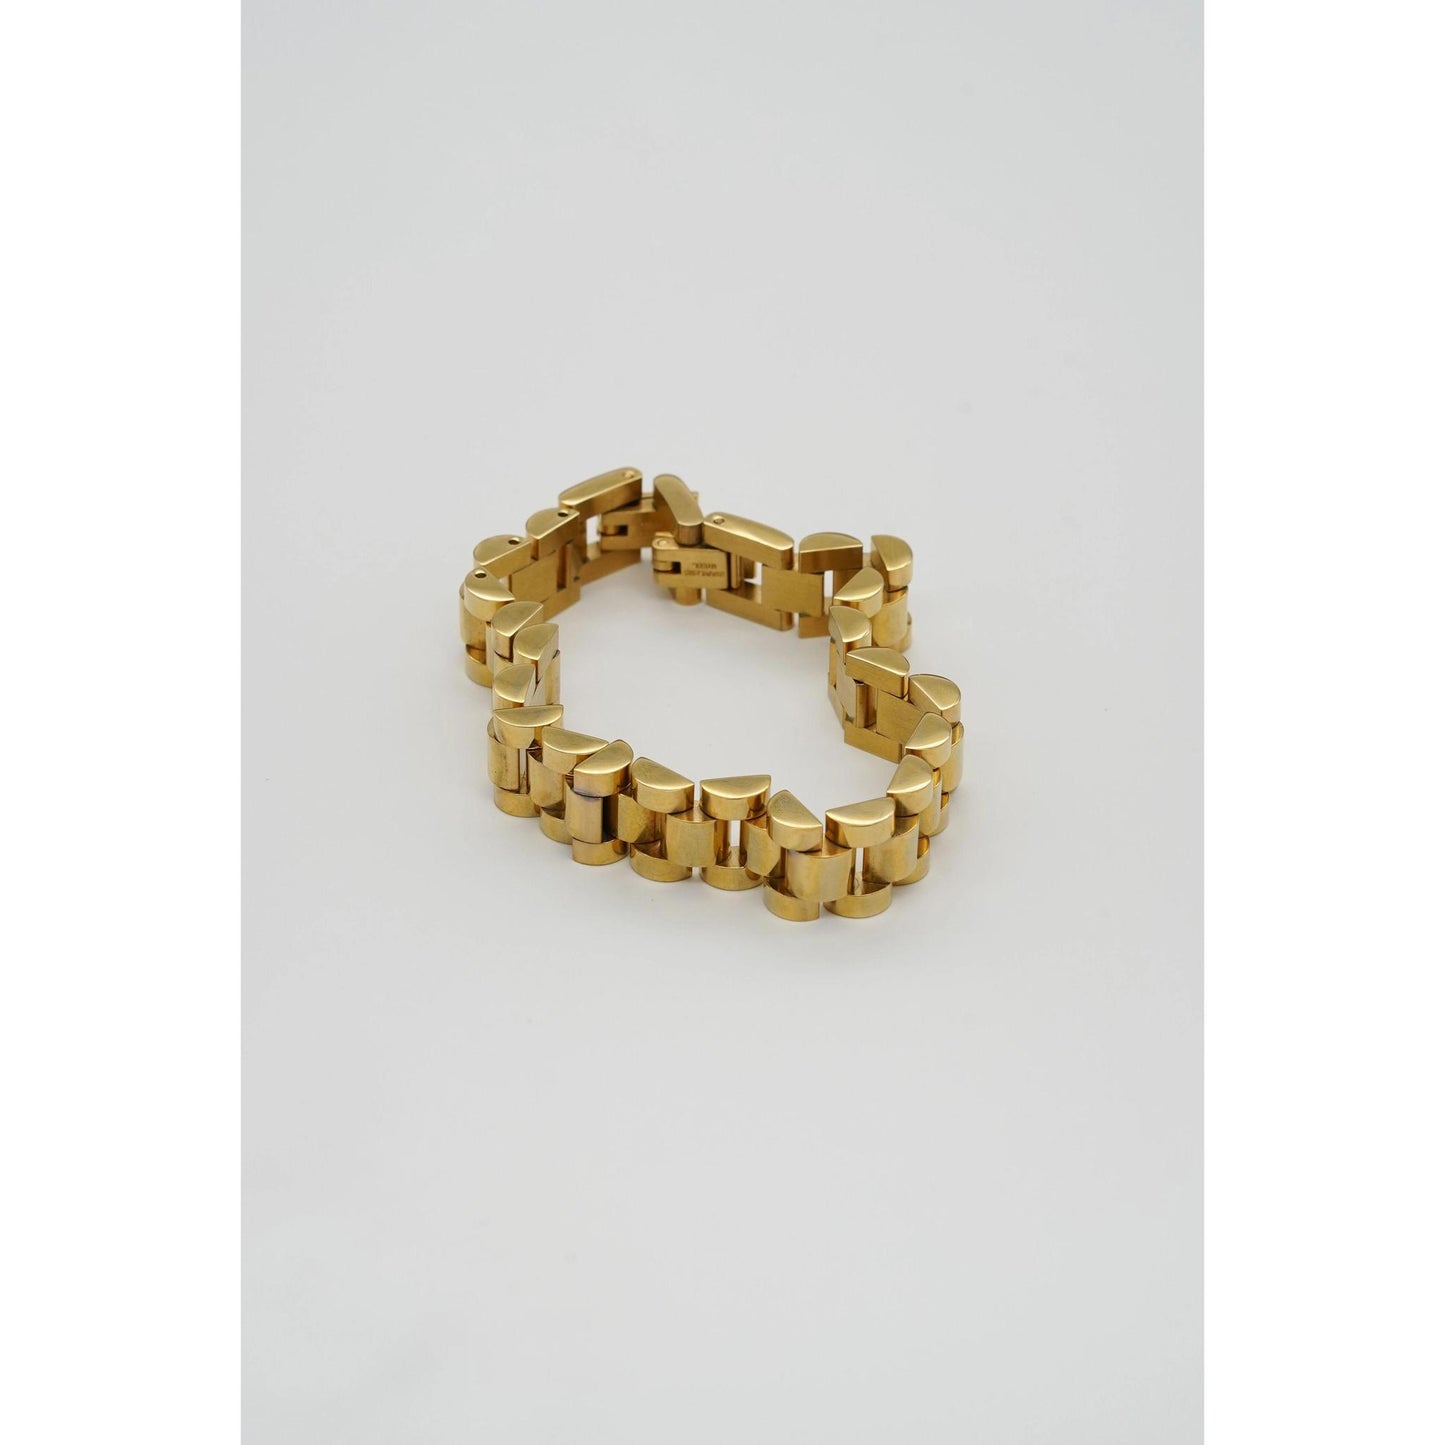 Gold Watch Band Bracelet Bracelet